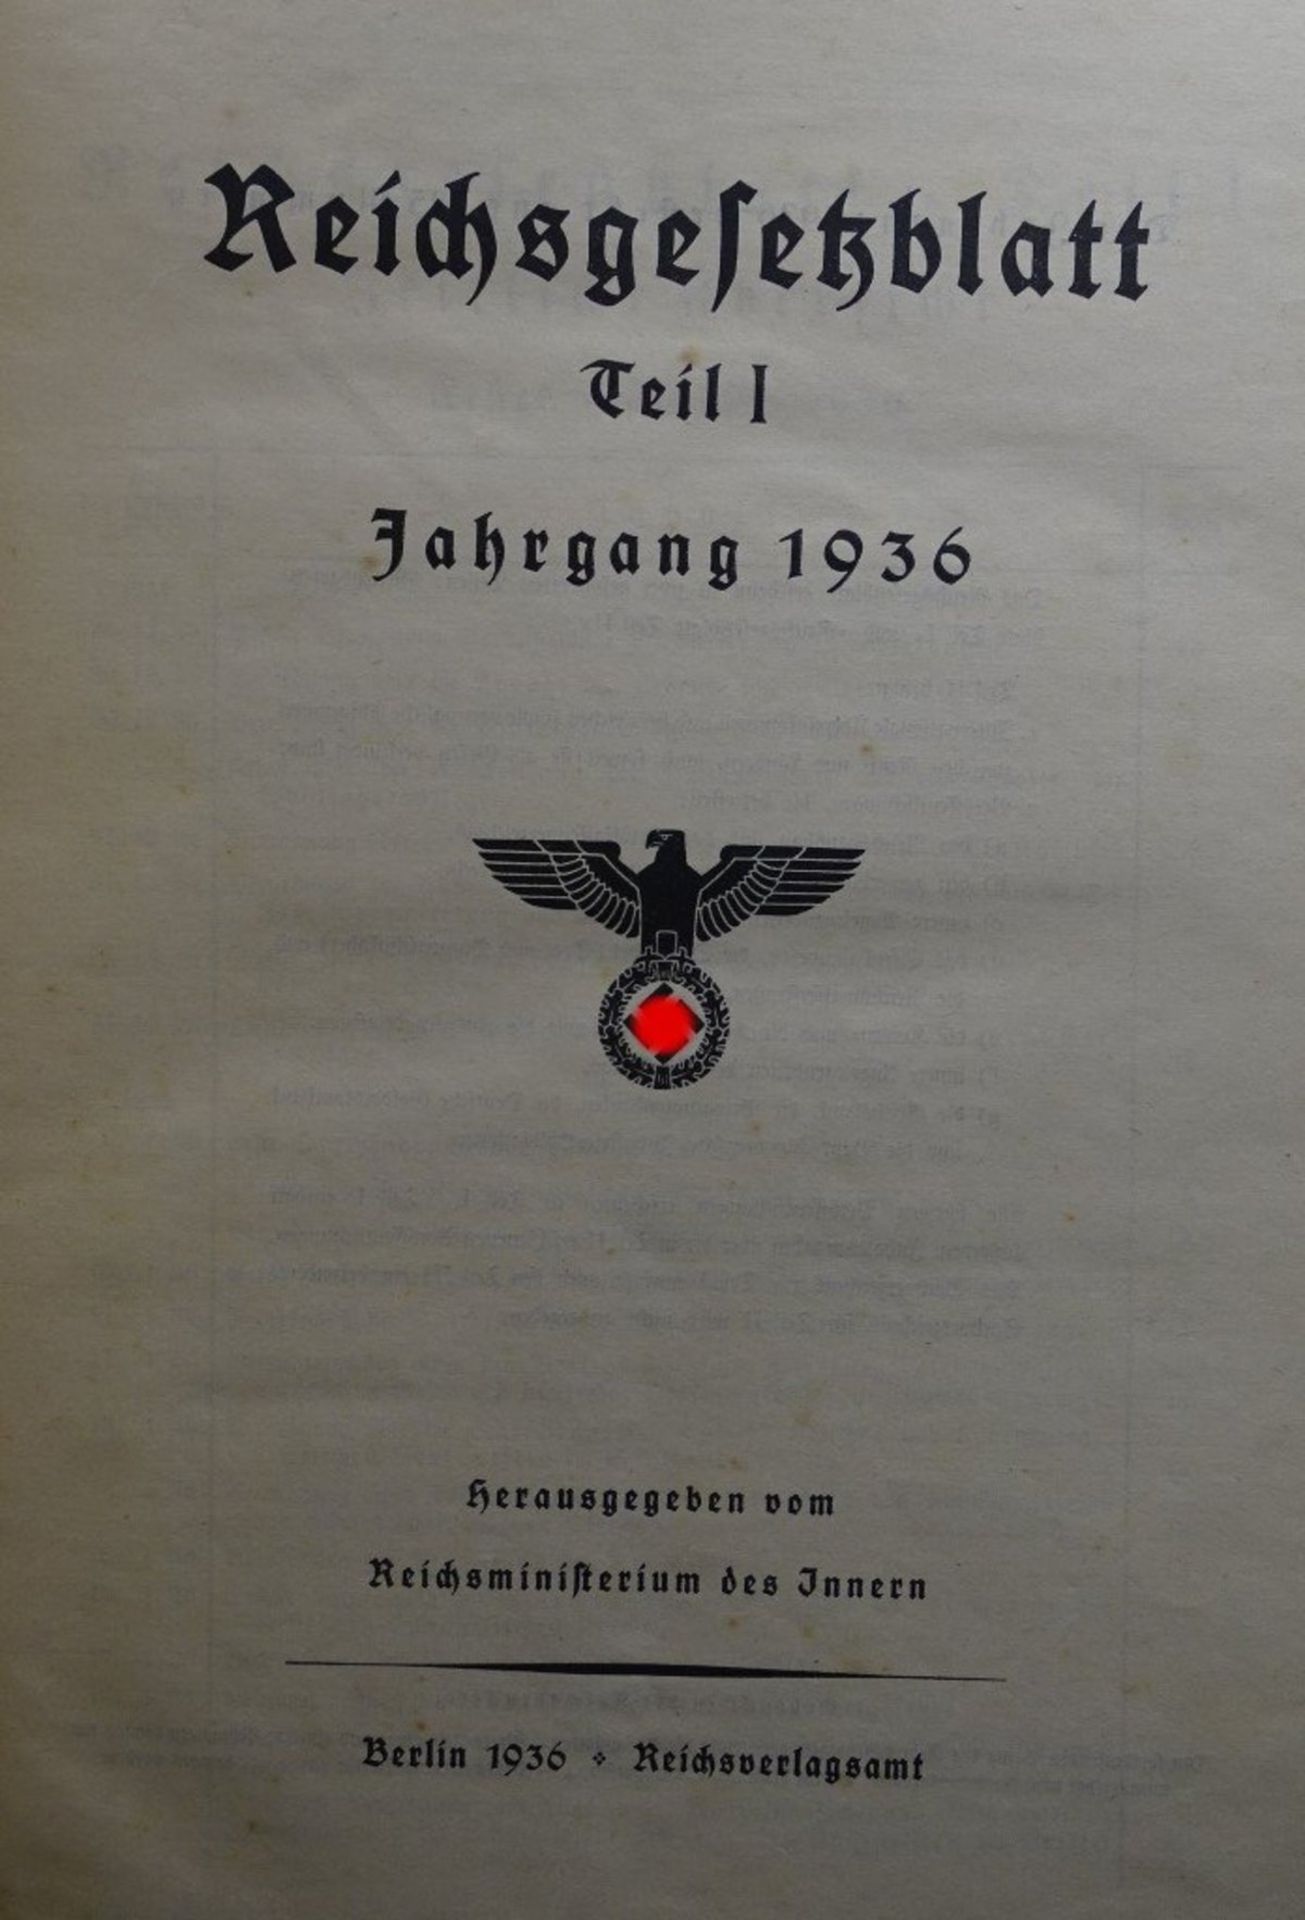 Reichsgesetzblatt Jahrgang 1936,Teil 1 ,Reichsministerium des Innern, - Image 2 of 7